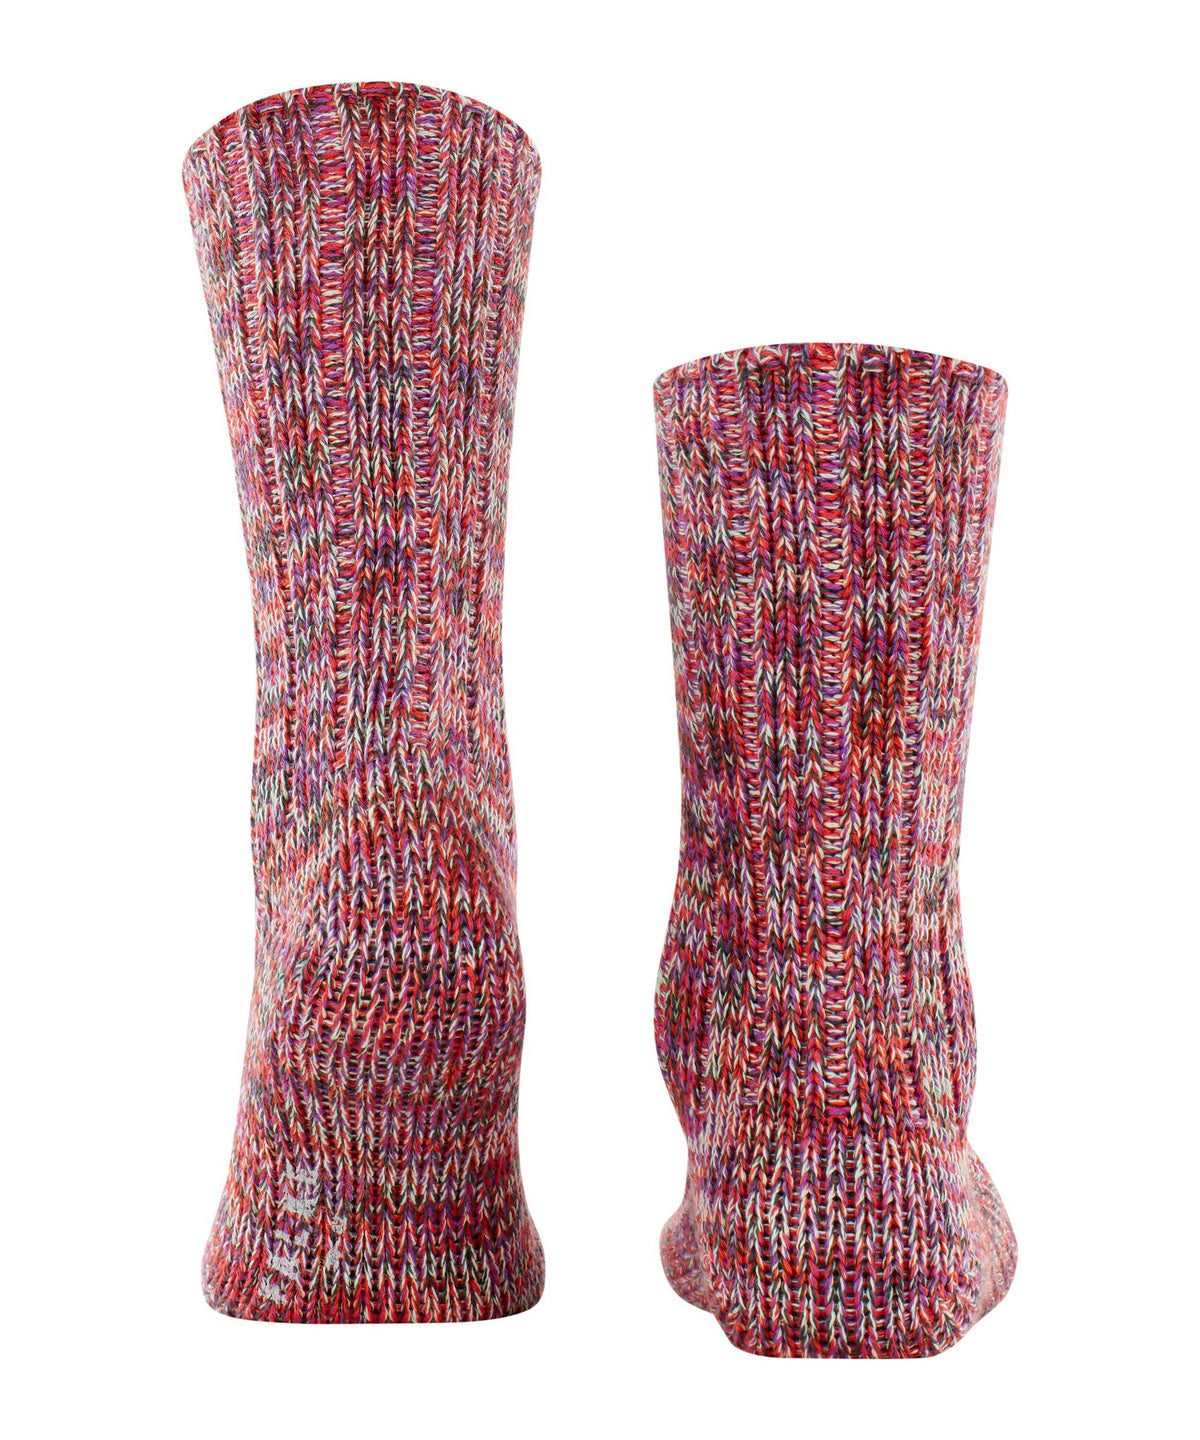 Tulip Brooklyn socks by Falke